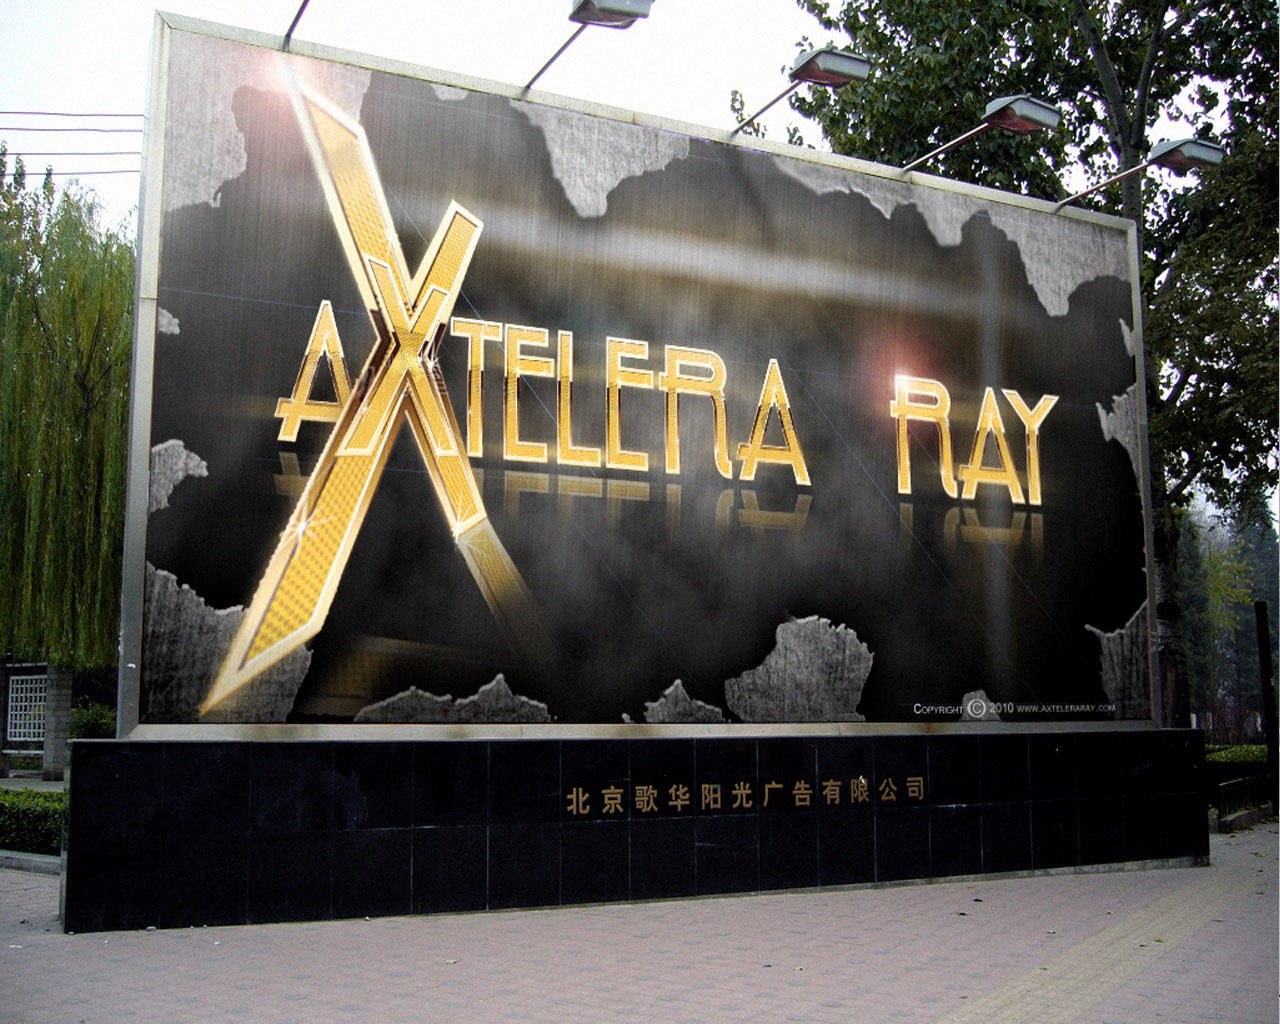 Axtelera-Ray